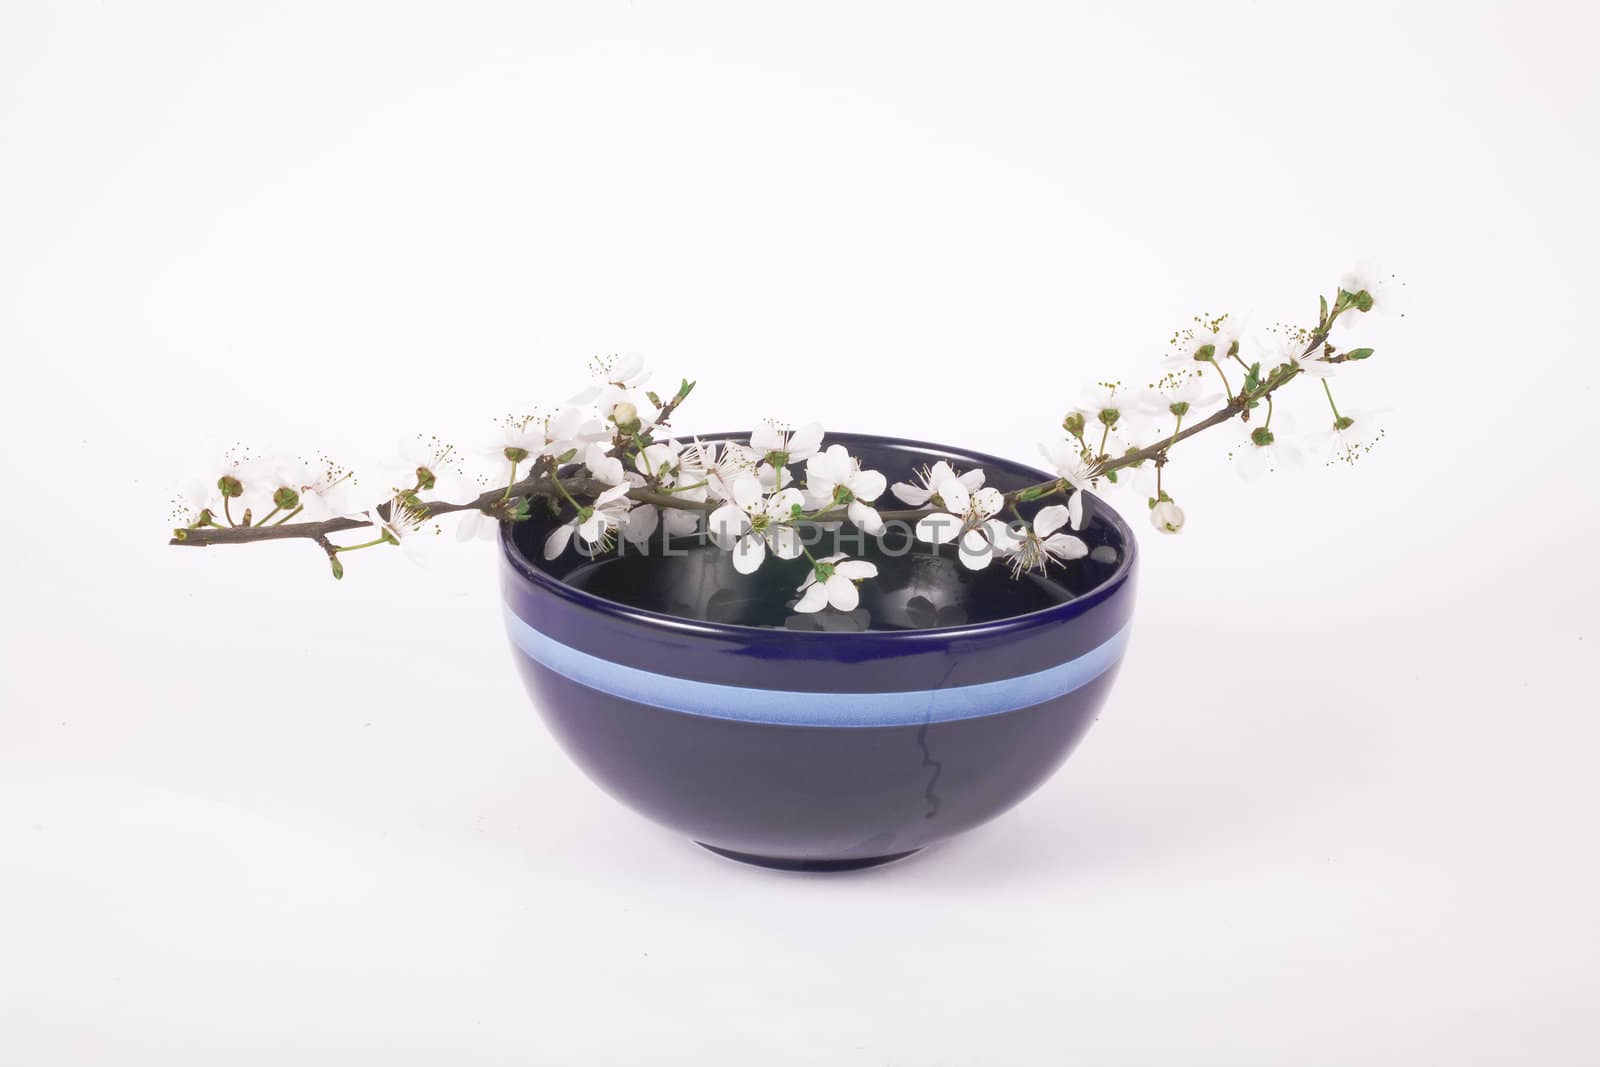 white apple flower on dark blue china bowl